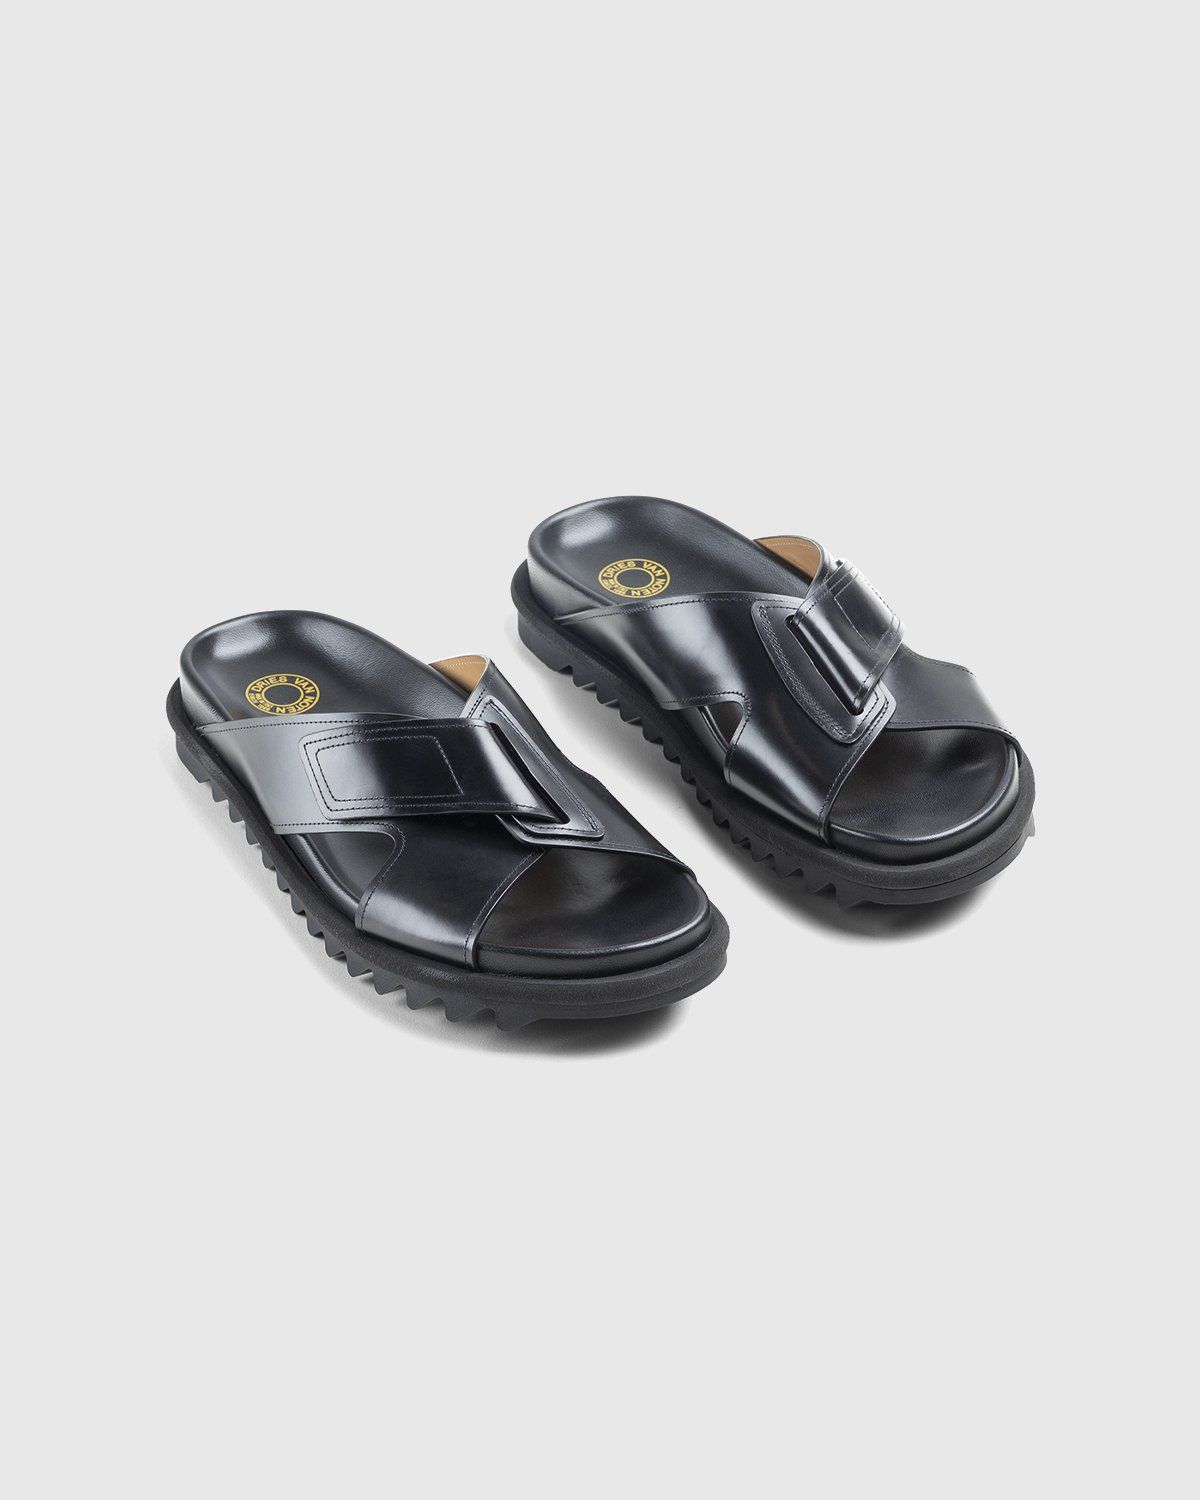 Dries Van Noten – Leather Criss-Cross Sandals Black - Image 3